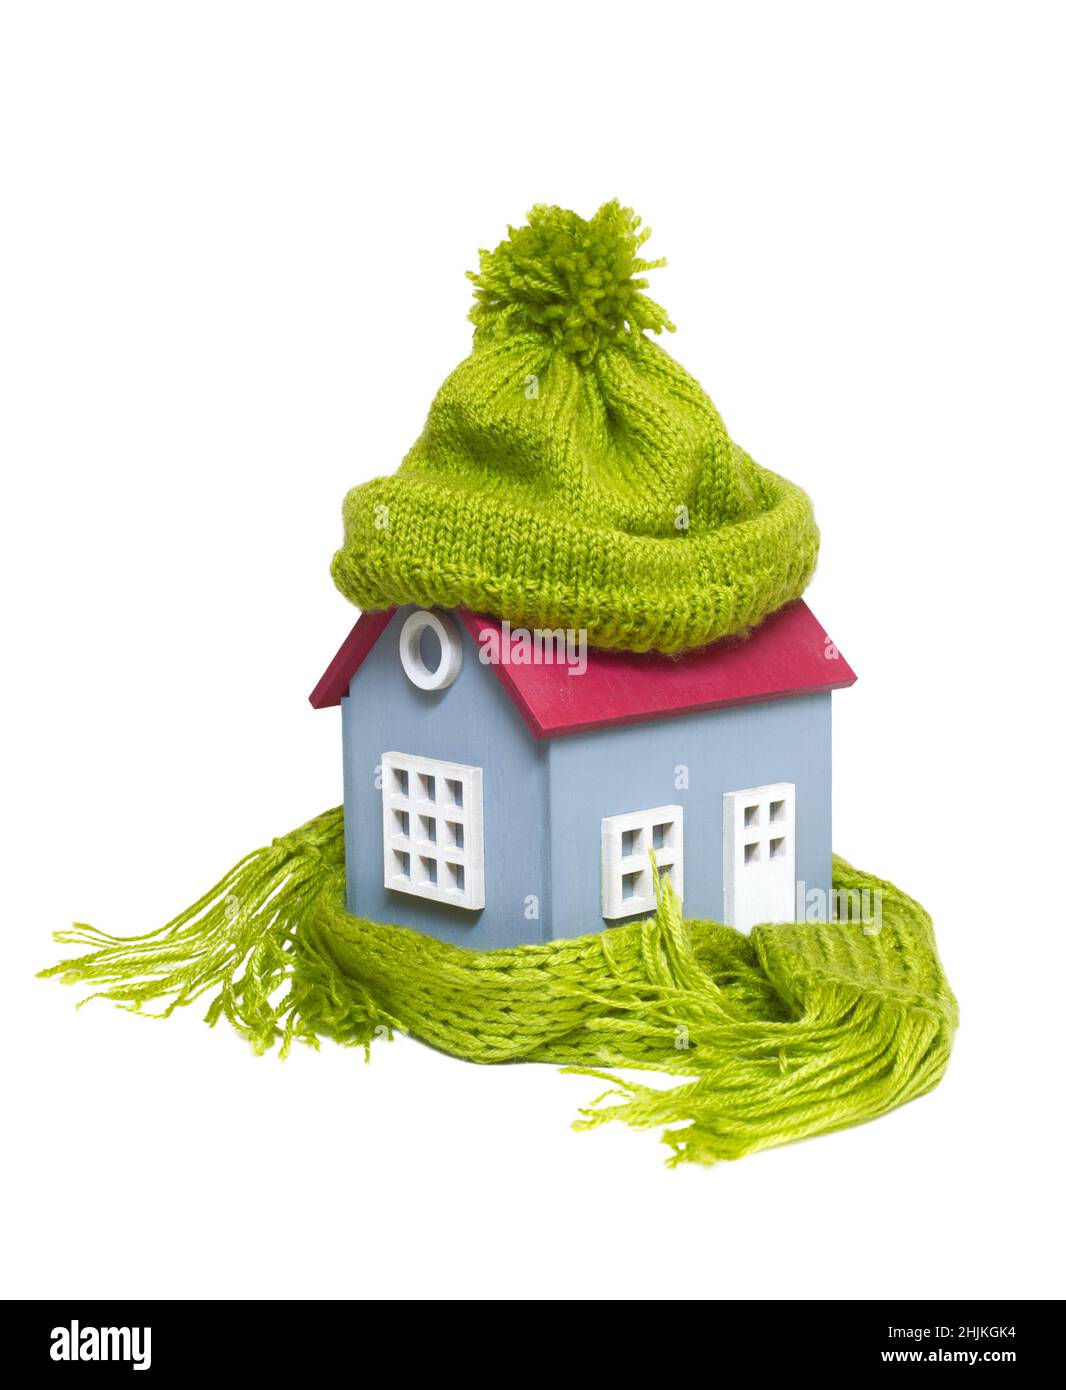 Maison modèle miniature conceptuelle avec chapeau et écharpe en laine verte, isolée sur fond blanc Banque D'Images